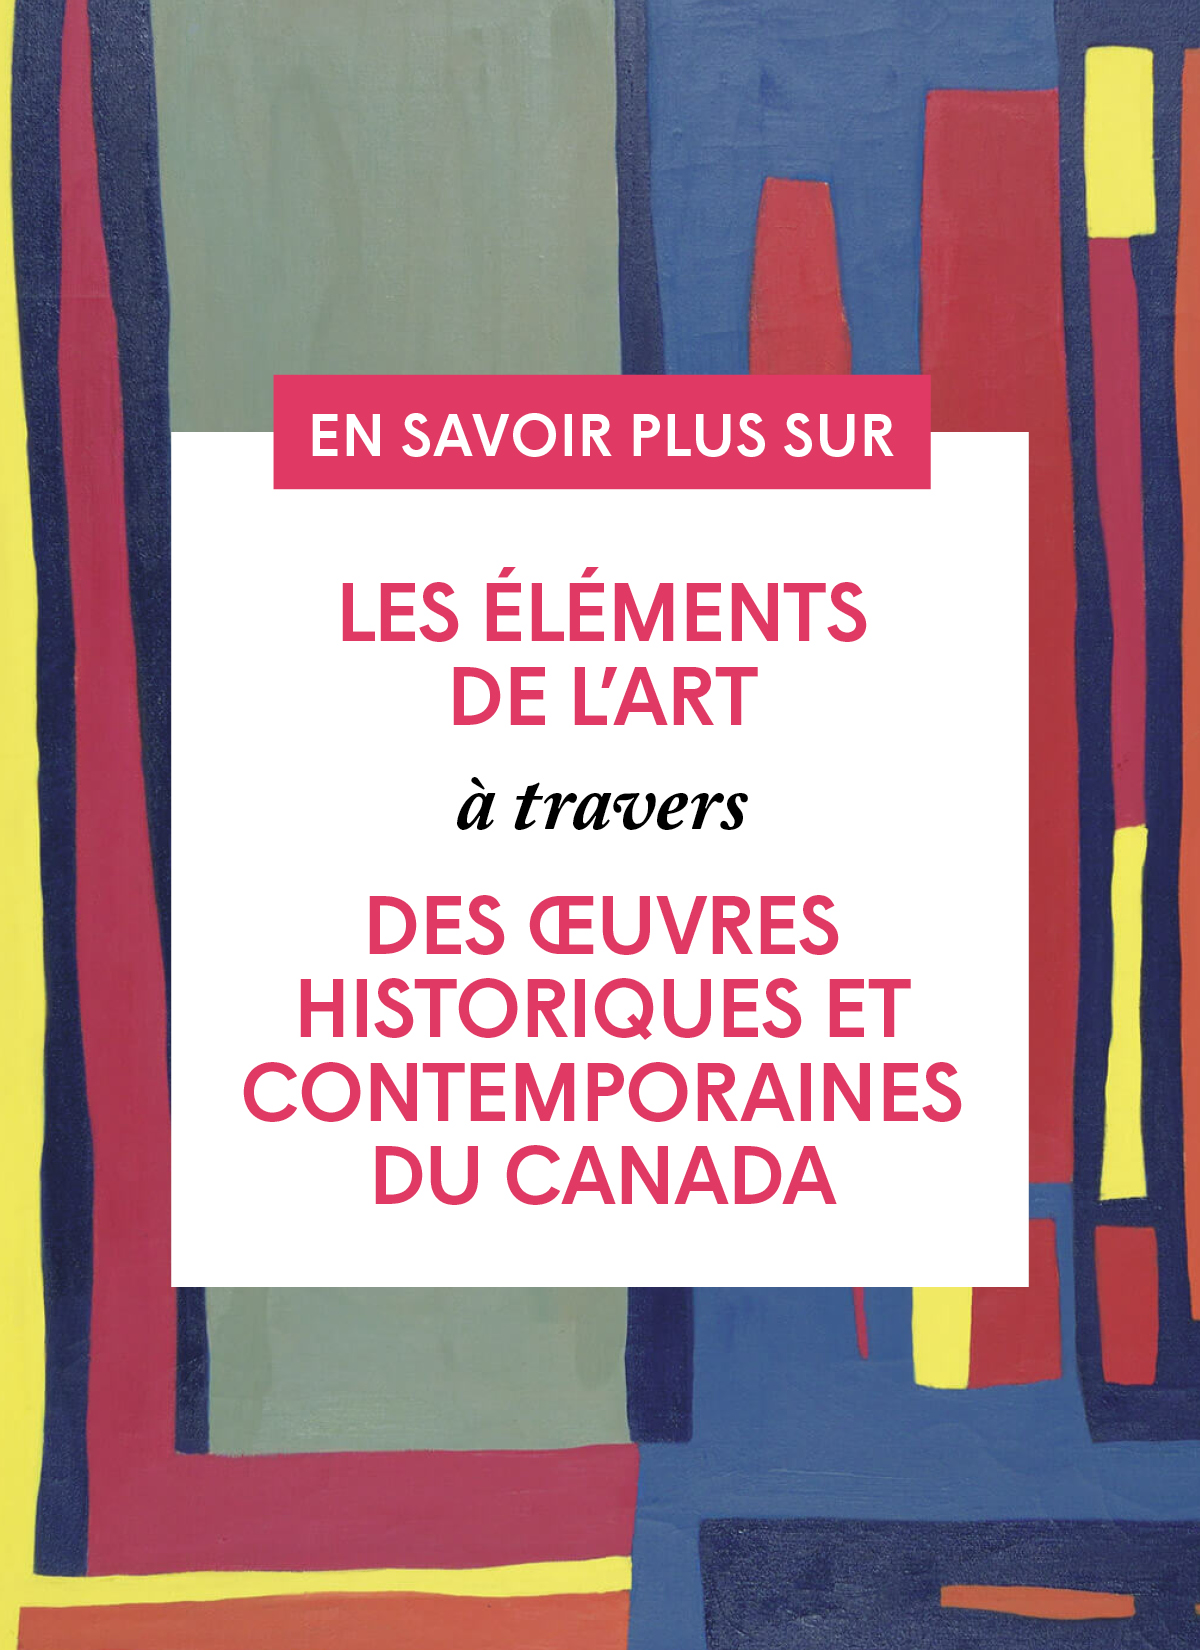 Les éléments de l'art à travers des œuvres historiques et contemporaines du Canada